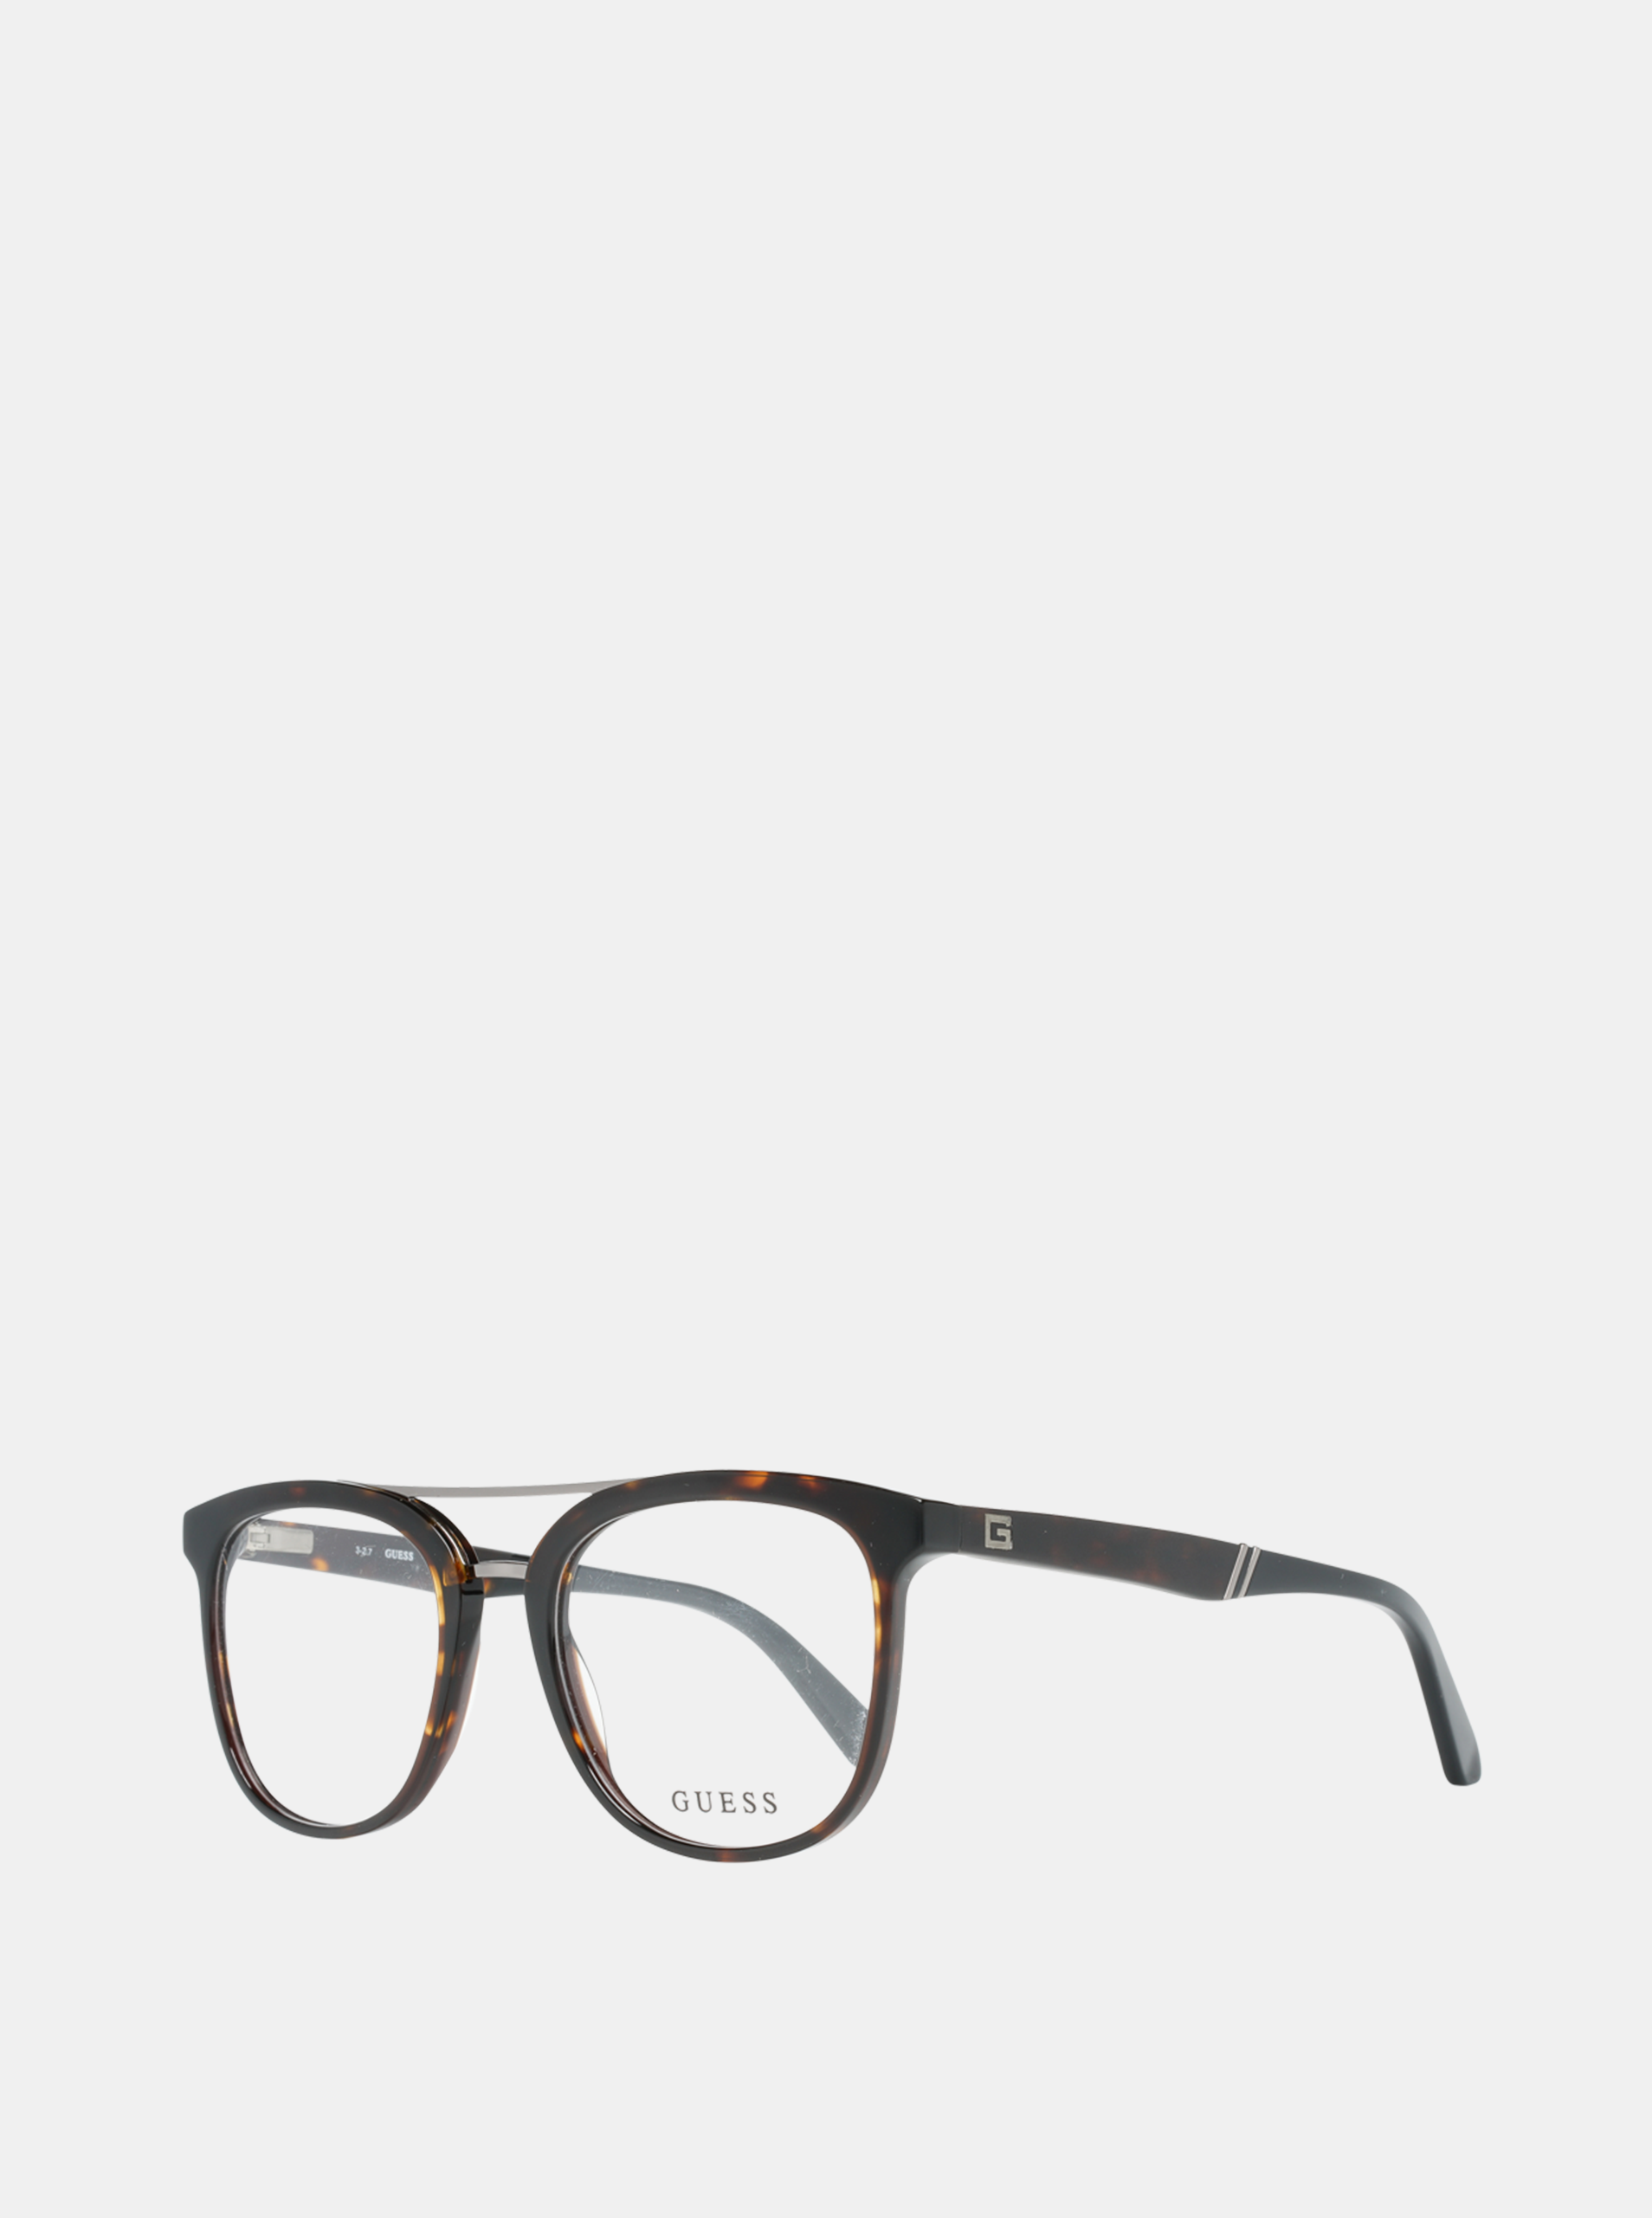 Hnědo-černé pánské obroučky brýlí Guess